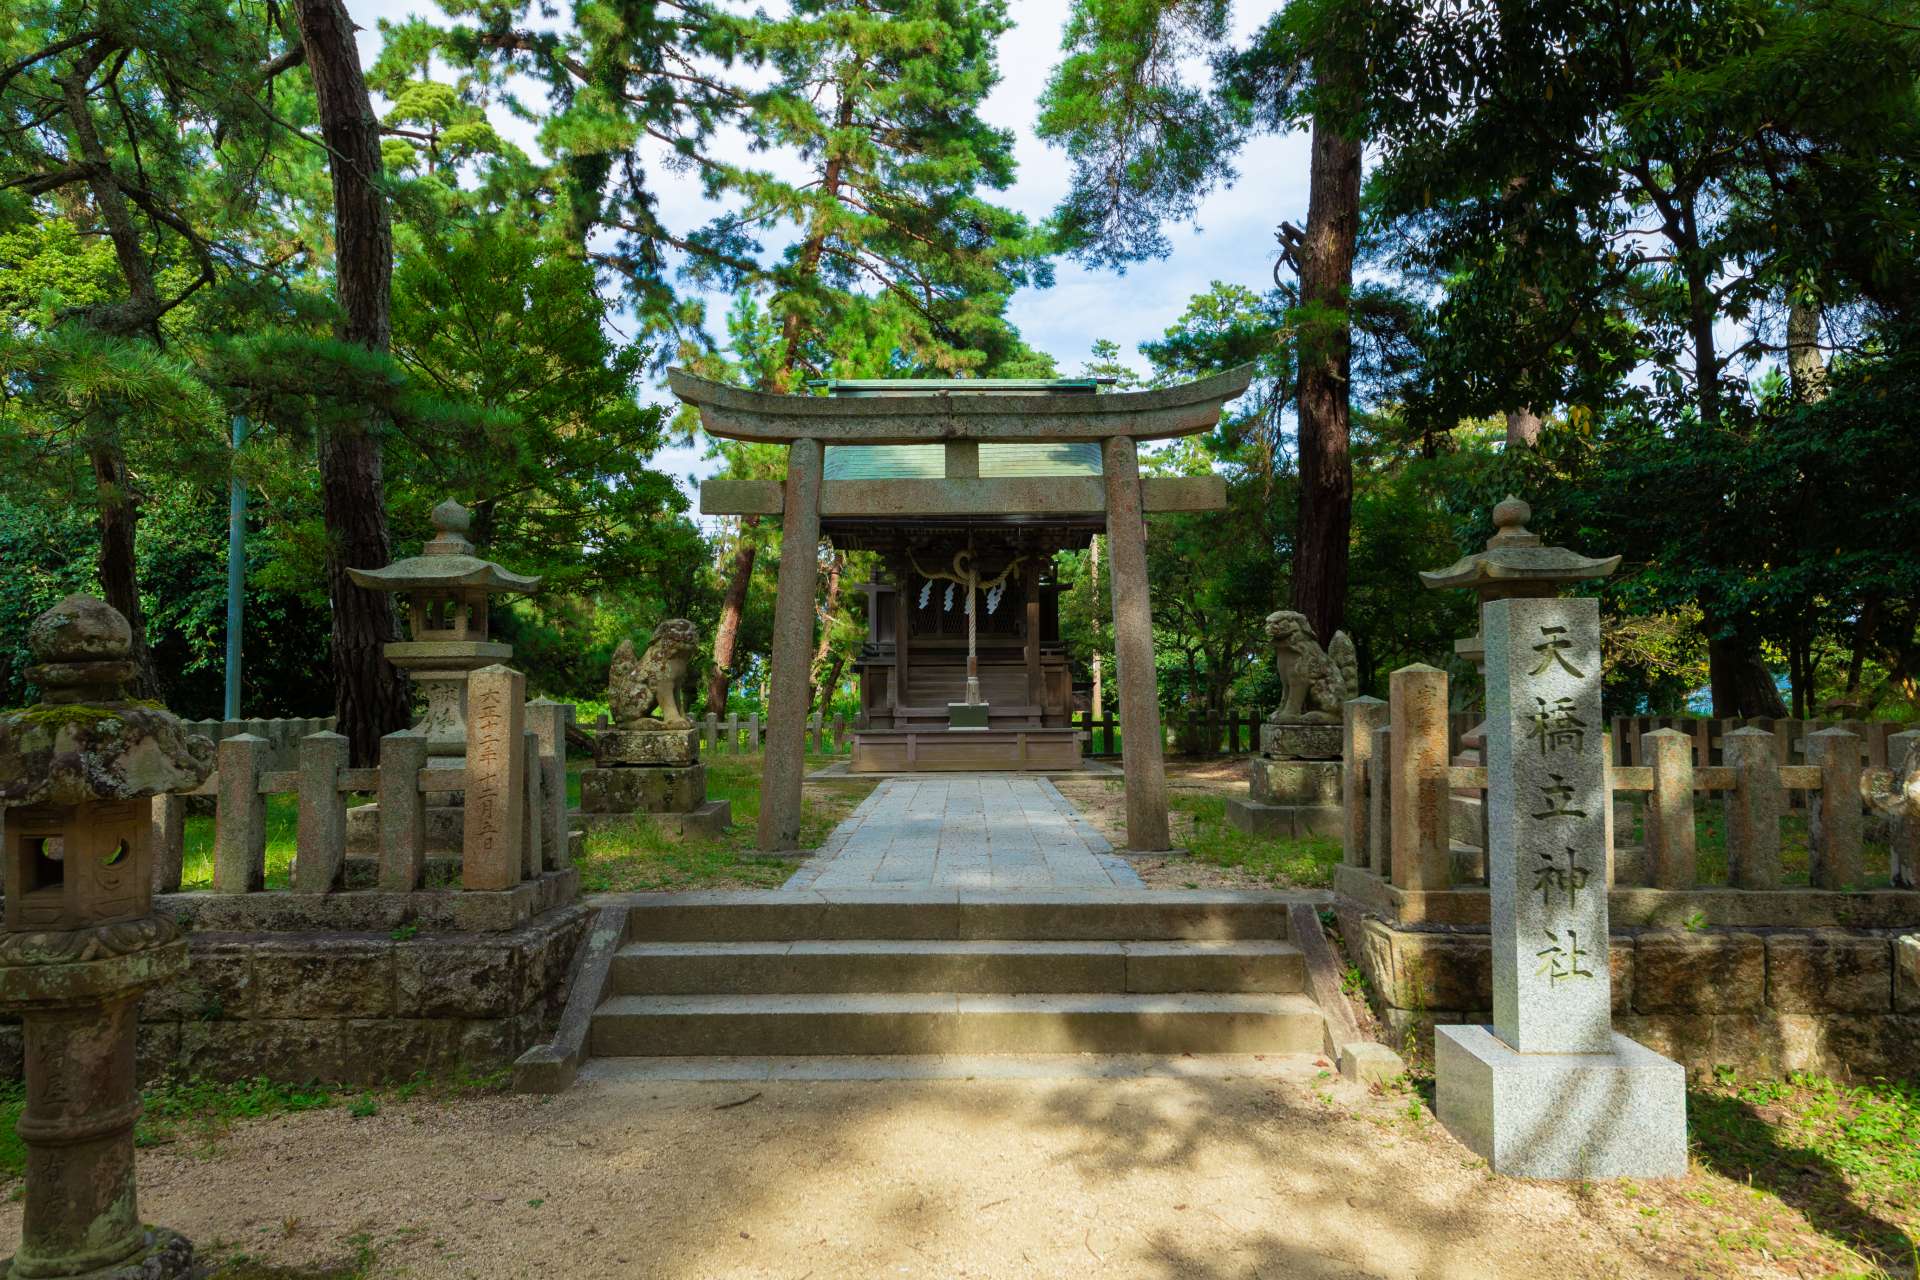 À mi-chemin, se trouve le sanctuaire d'Amanohashidate, un endroit populaire pour faire des vœux romantiques.